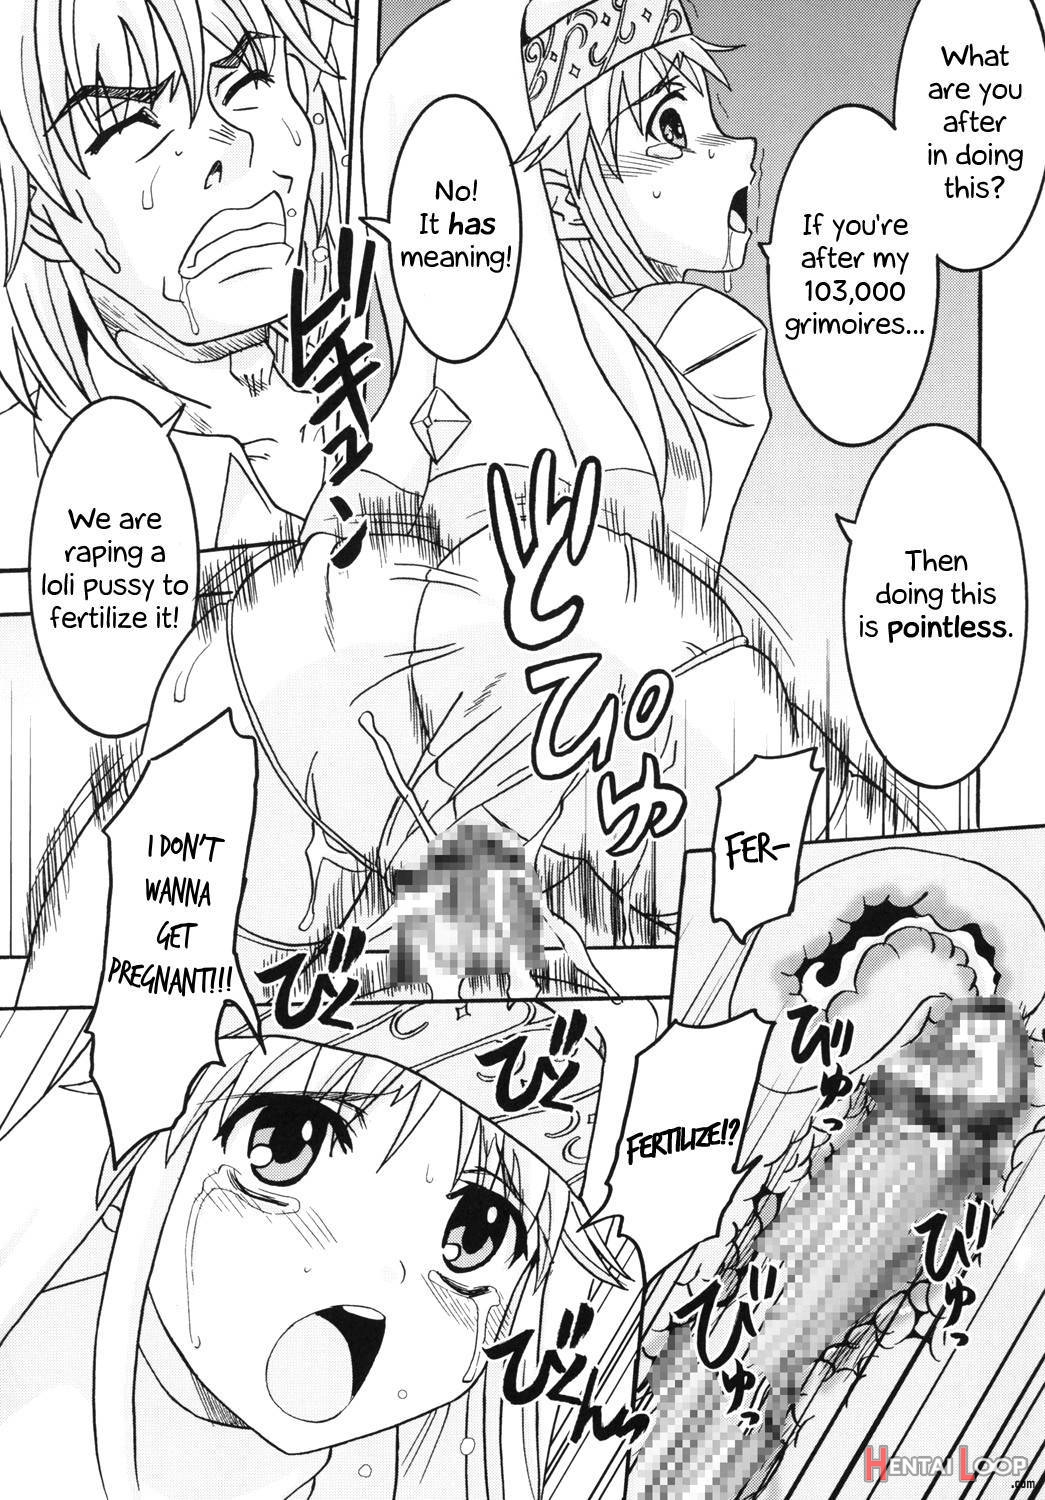 Toaru Otaku no Index #1 page 18